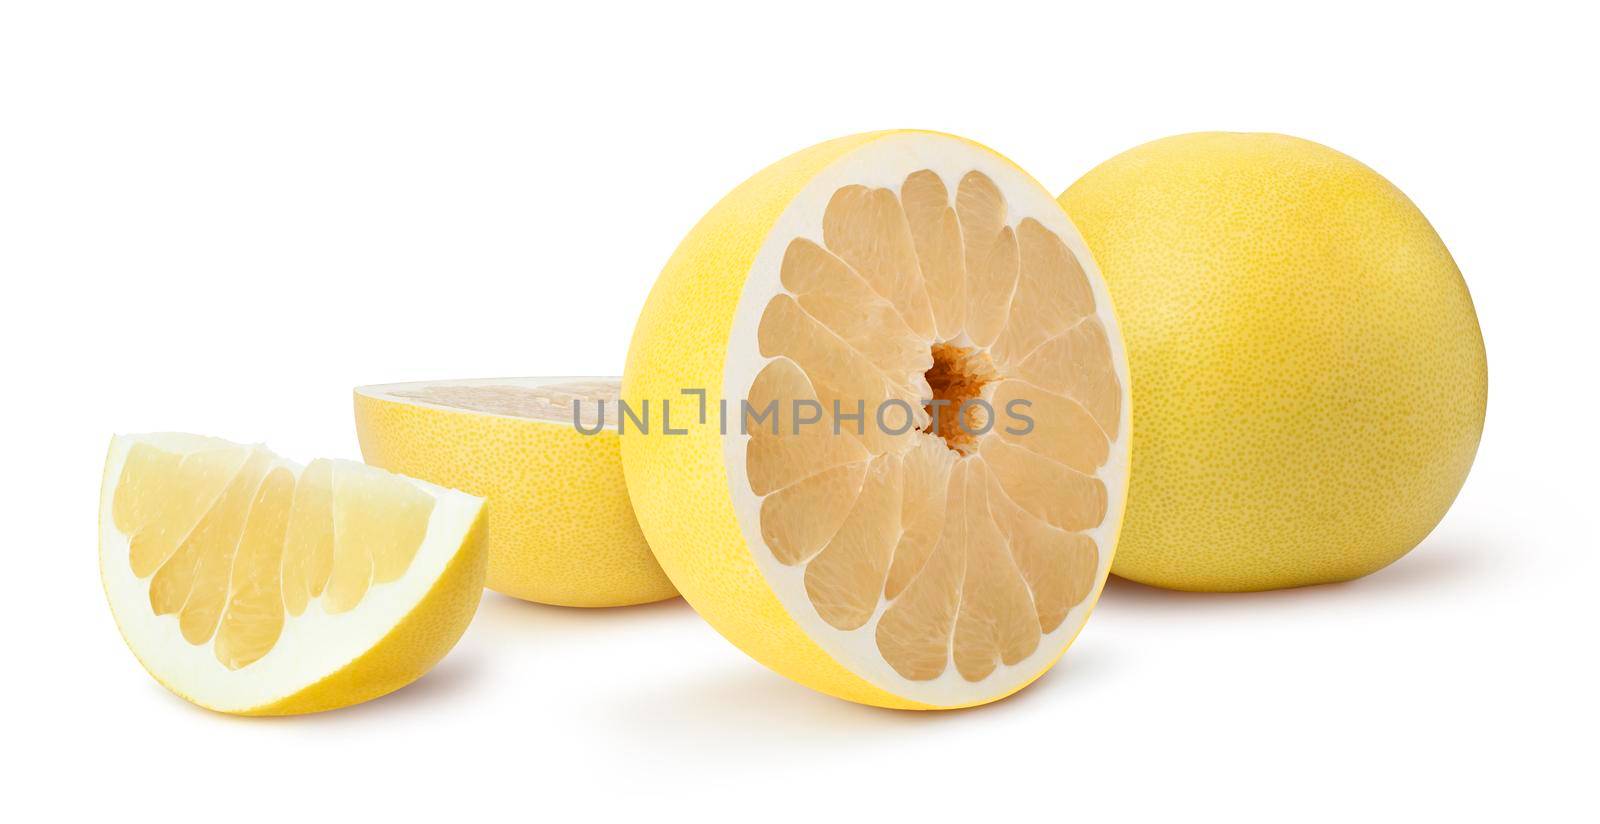 Pamela citrus fruit isolated on white background by SlayCer